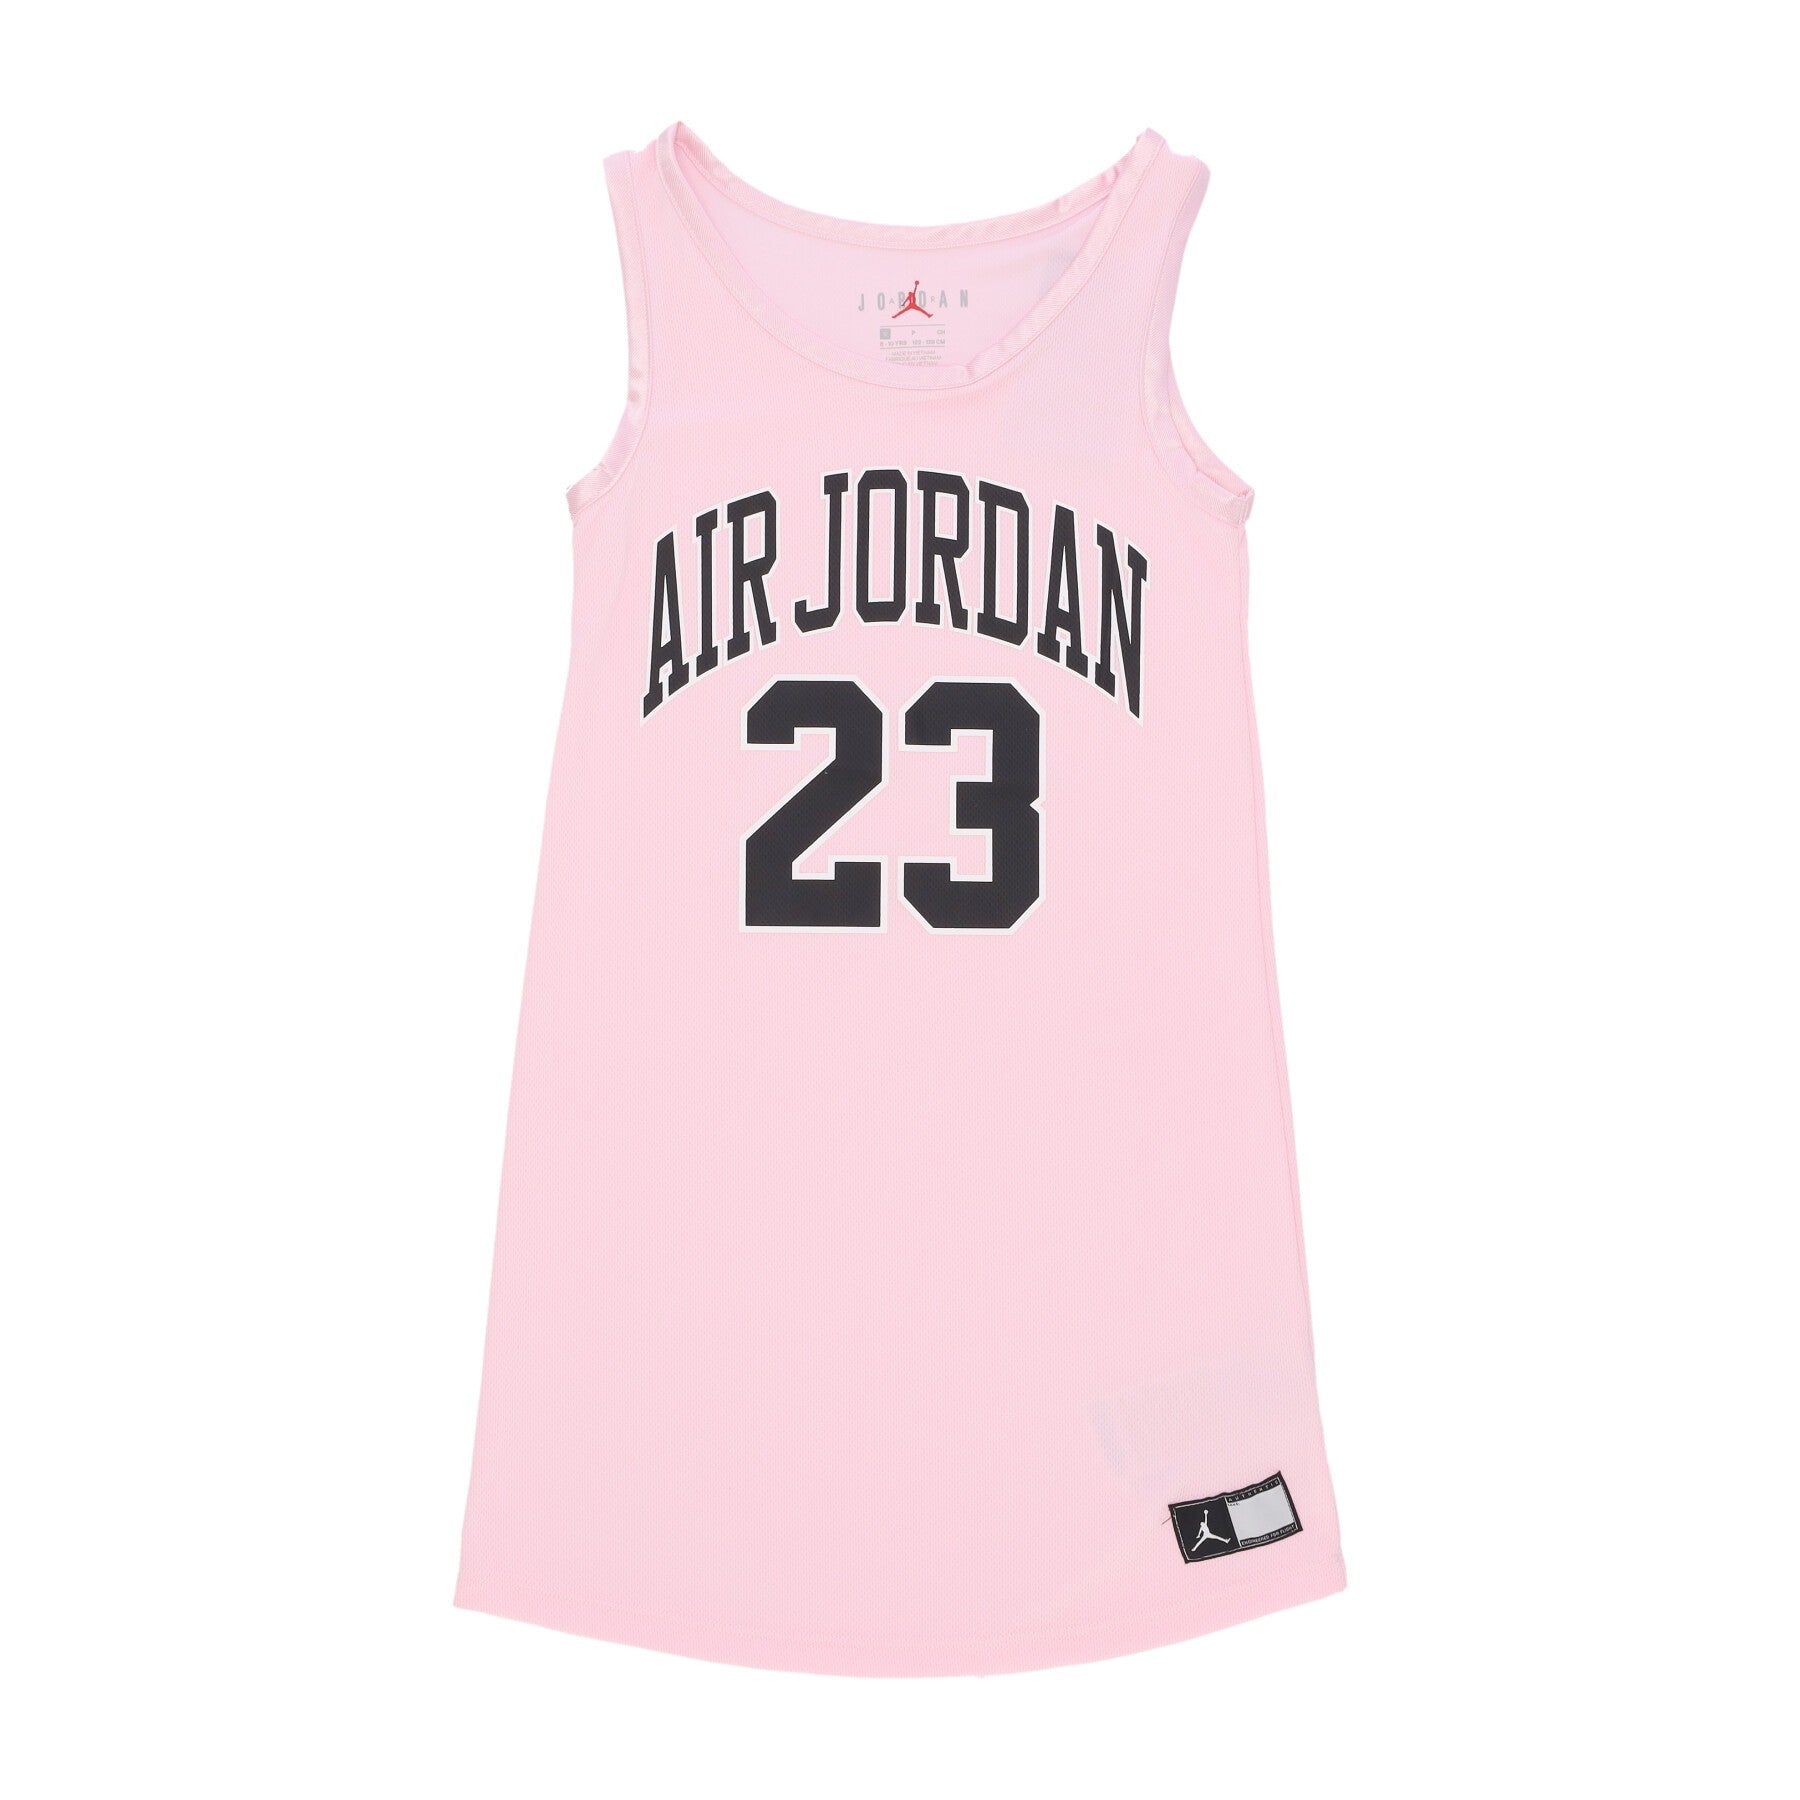 Basketball Type Tank Top Girl Hbr Jersey Dress Pink Foam